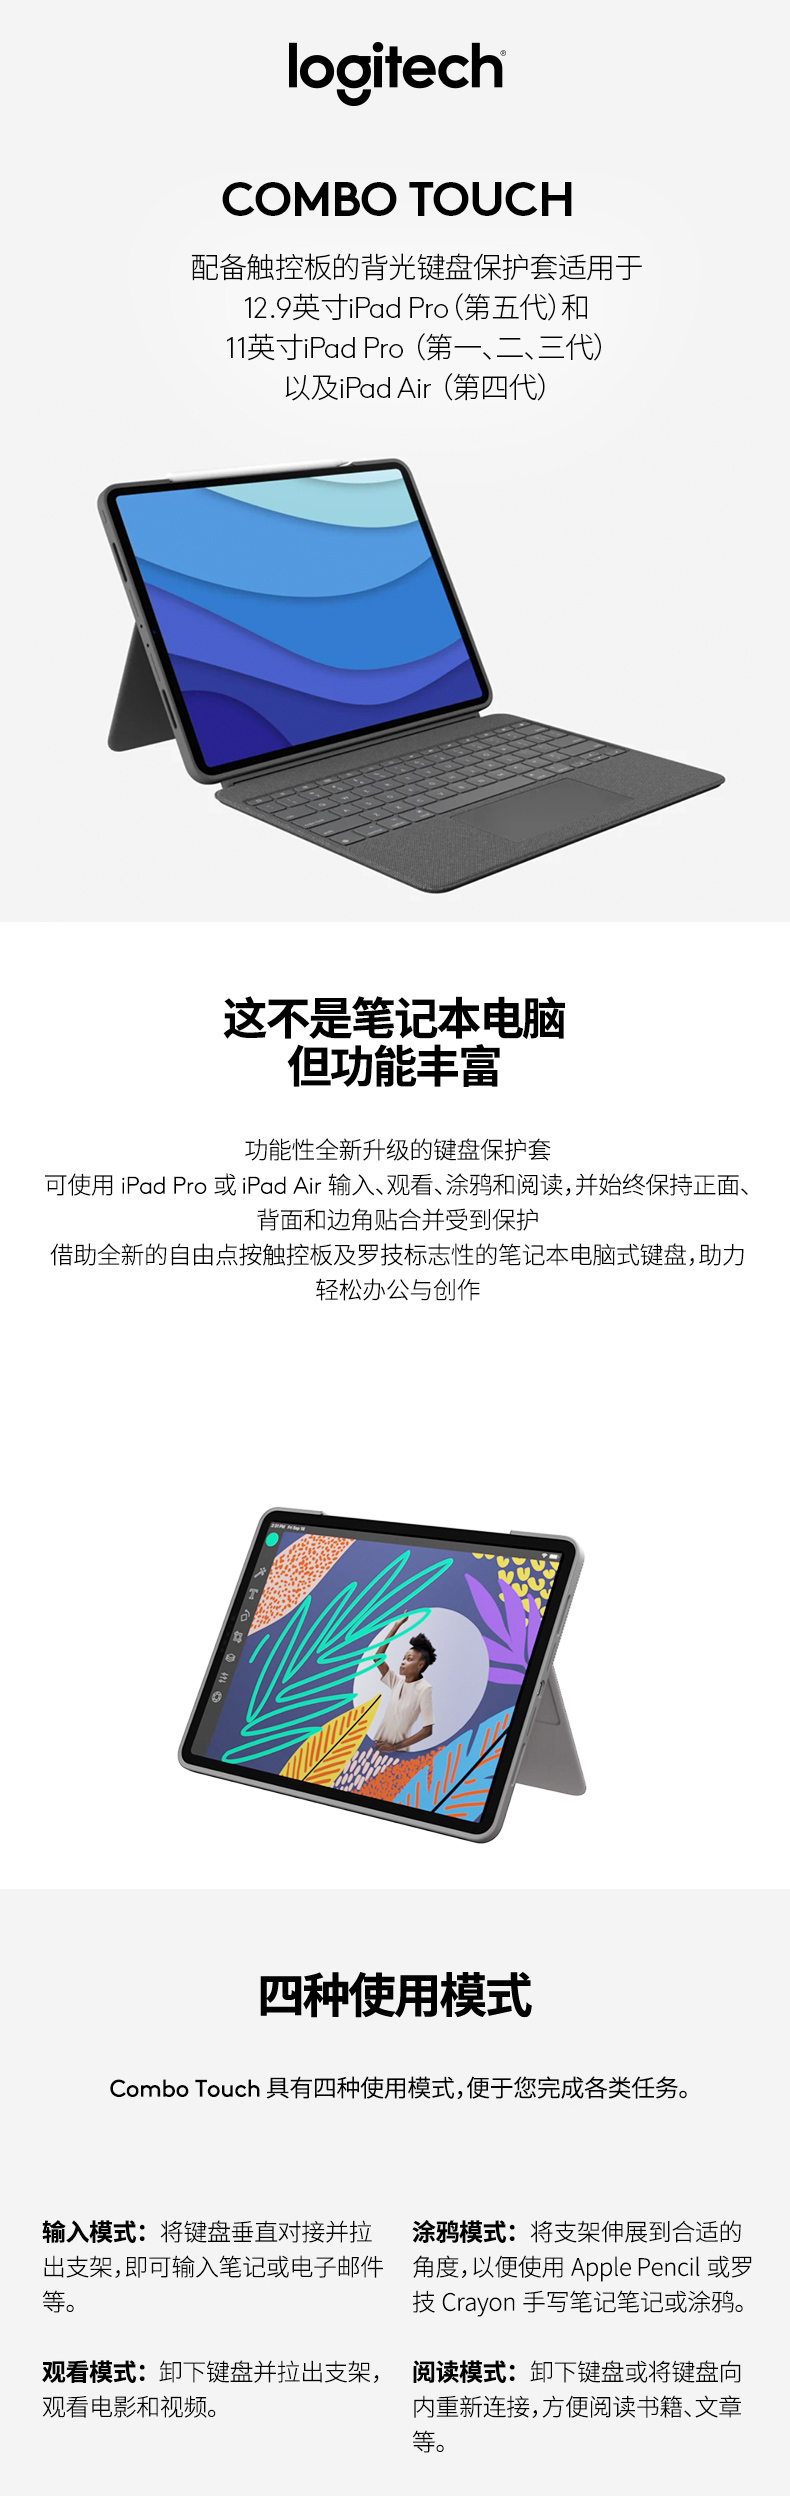 正規品販売中  Air用 iPad IK1095 Touch Combo Logicool タブレット